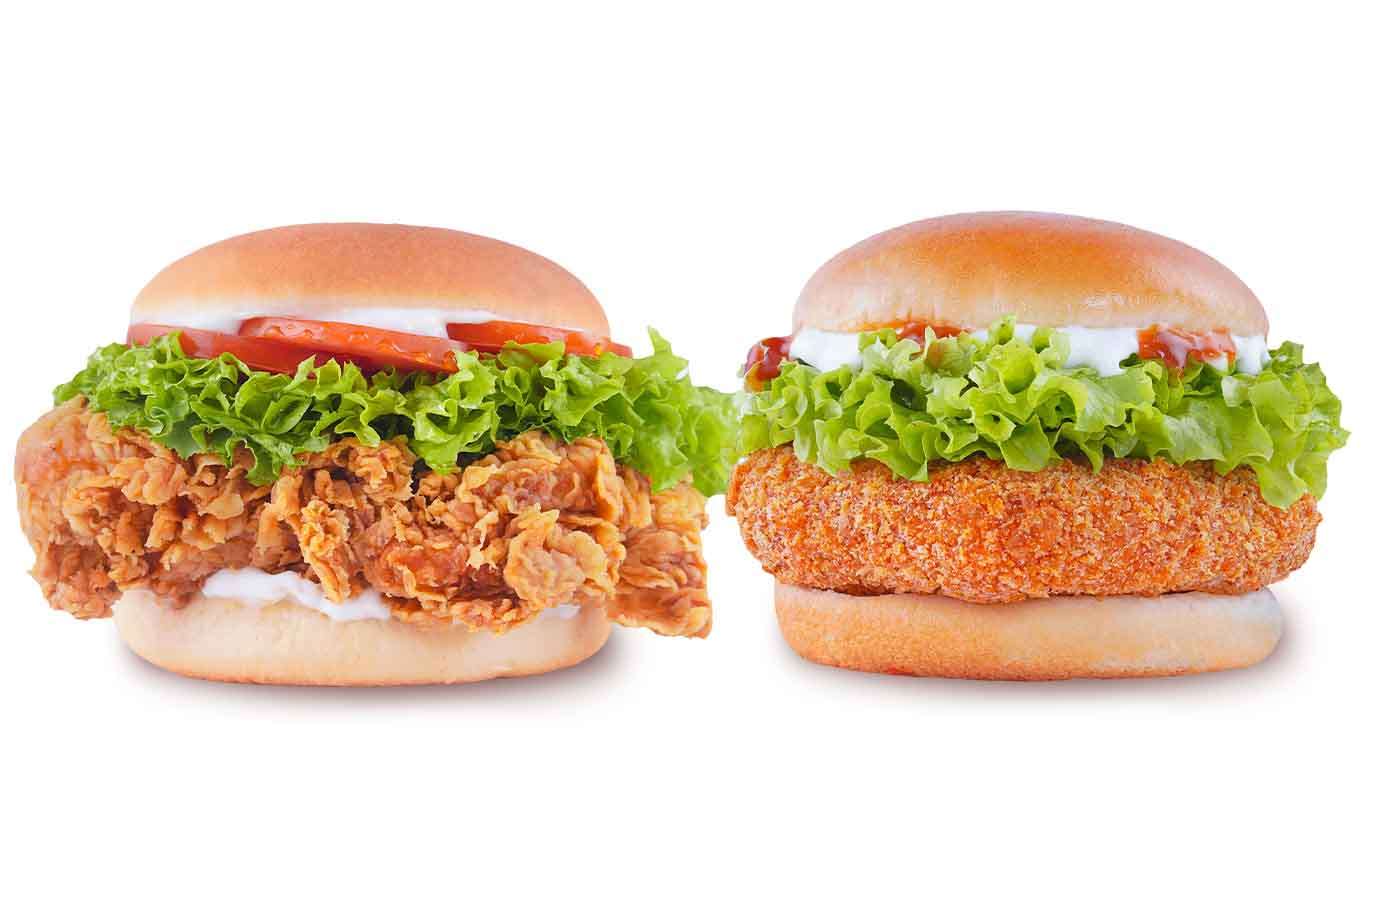 Veg + Non-Veg Burger Duos